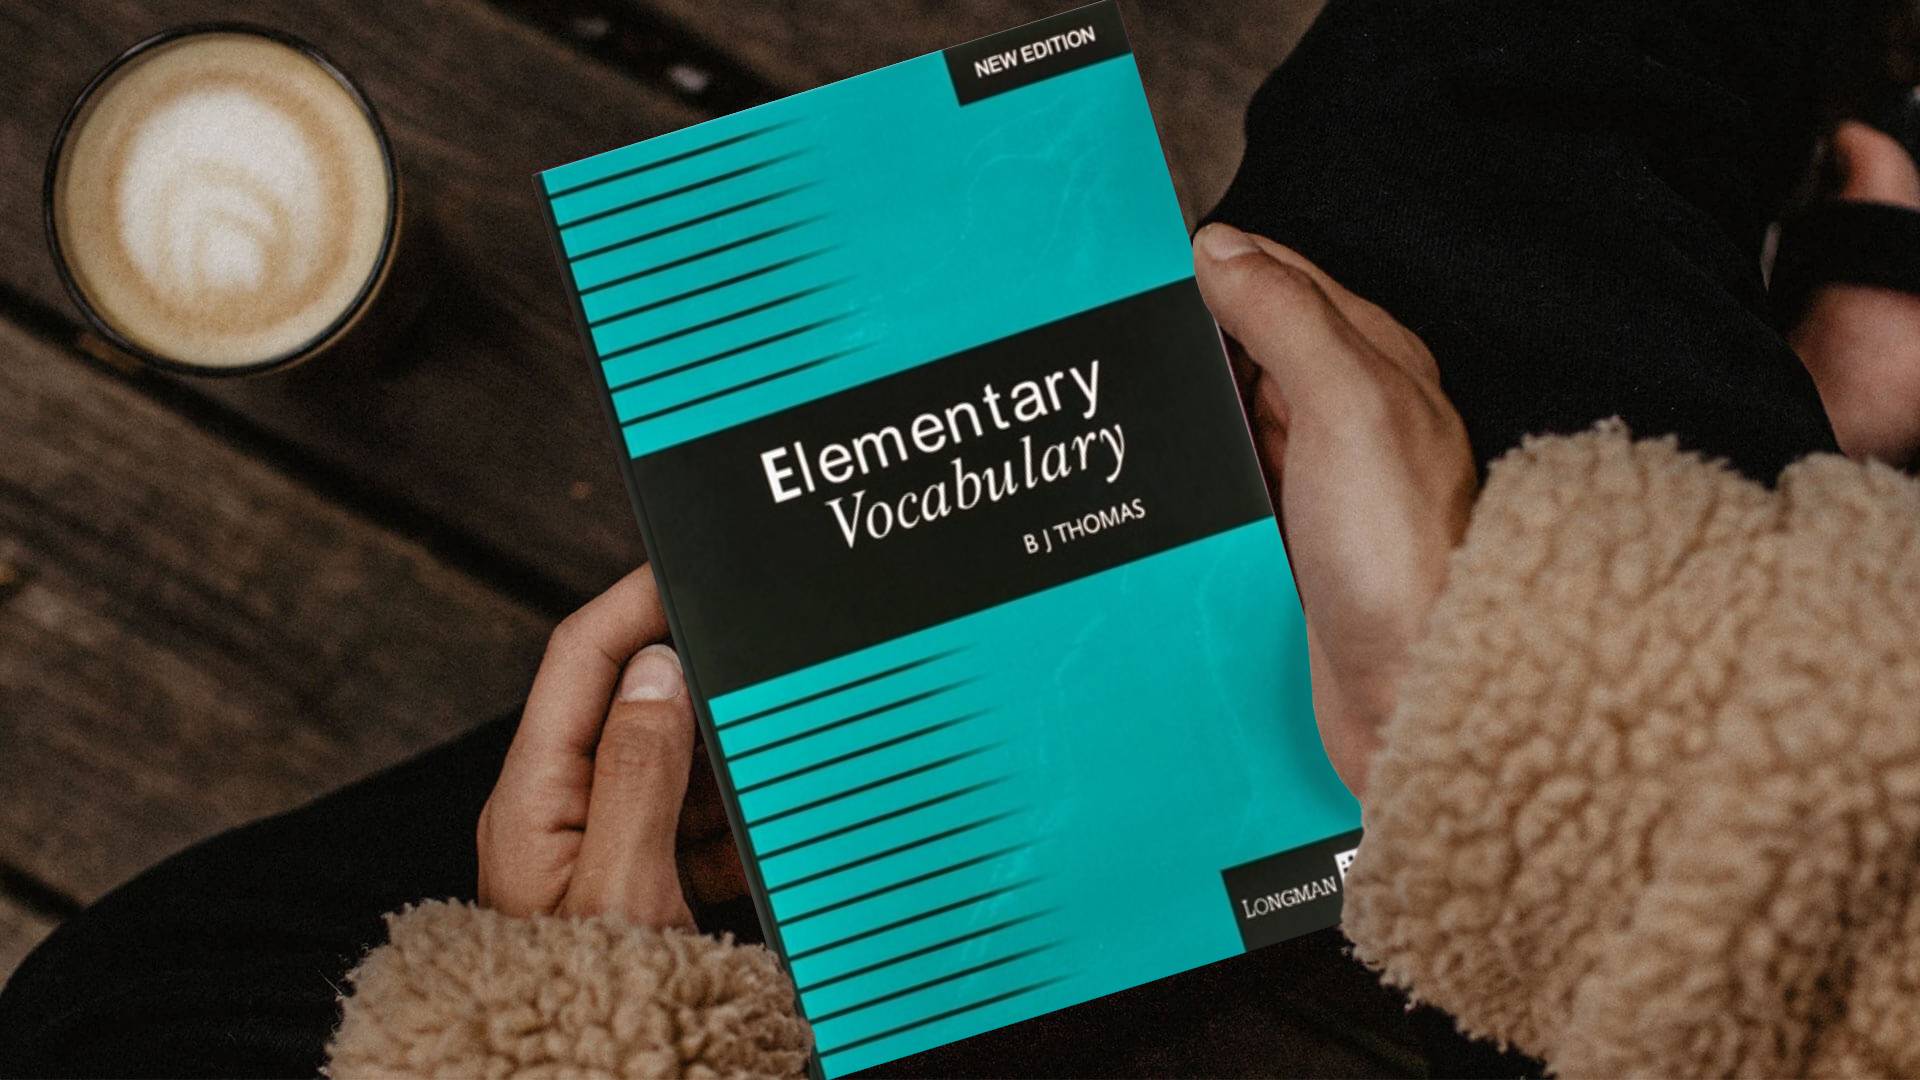 کتاب Elementary Vocabulary Bj thomas المنتری وکبیولری بی جی توماس